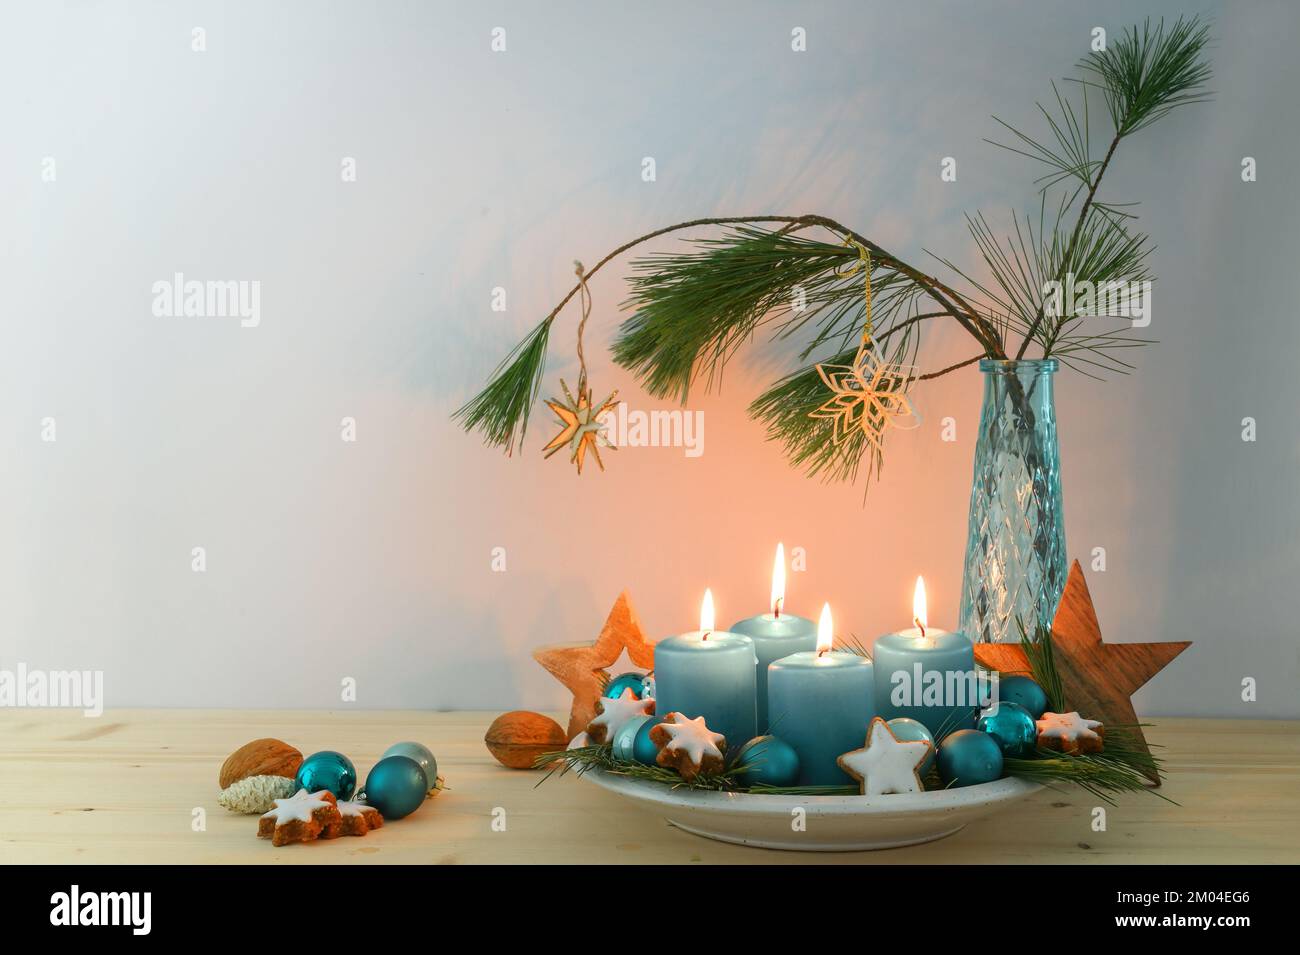 Quattro candele blu turchese per l'Avvento, decorazione natalizia, stelle in legno su un piatto e un vaso con rami di pino, spazio copia, fuoco selezionato, narro Foto Stock